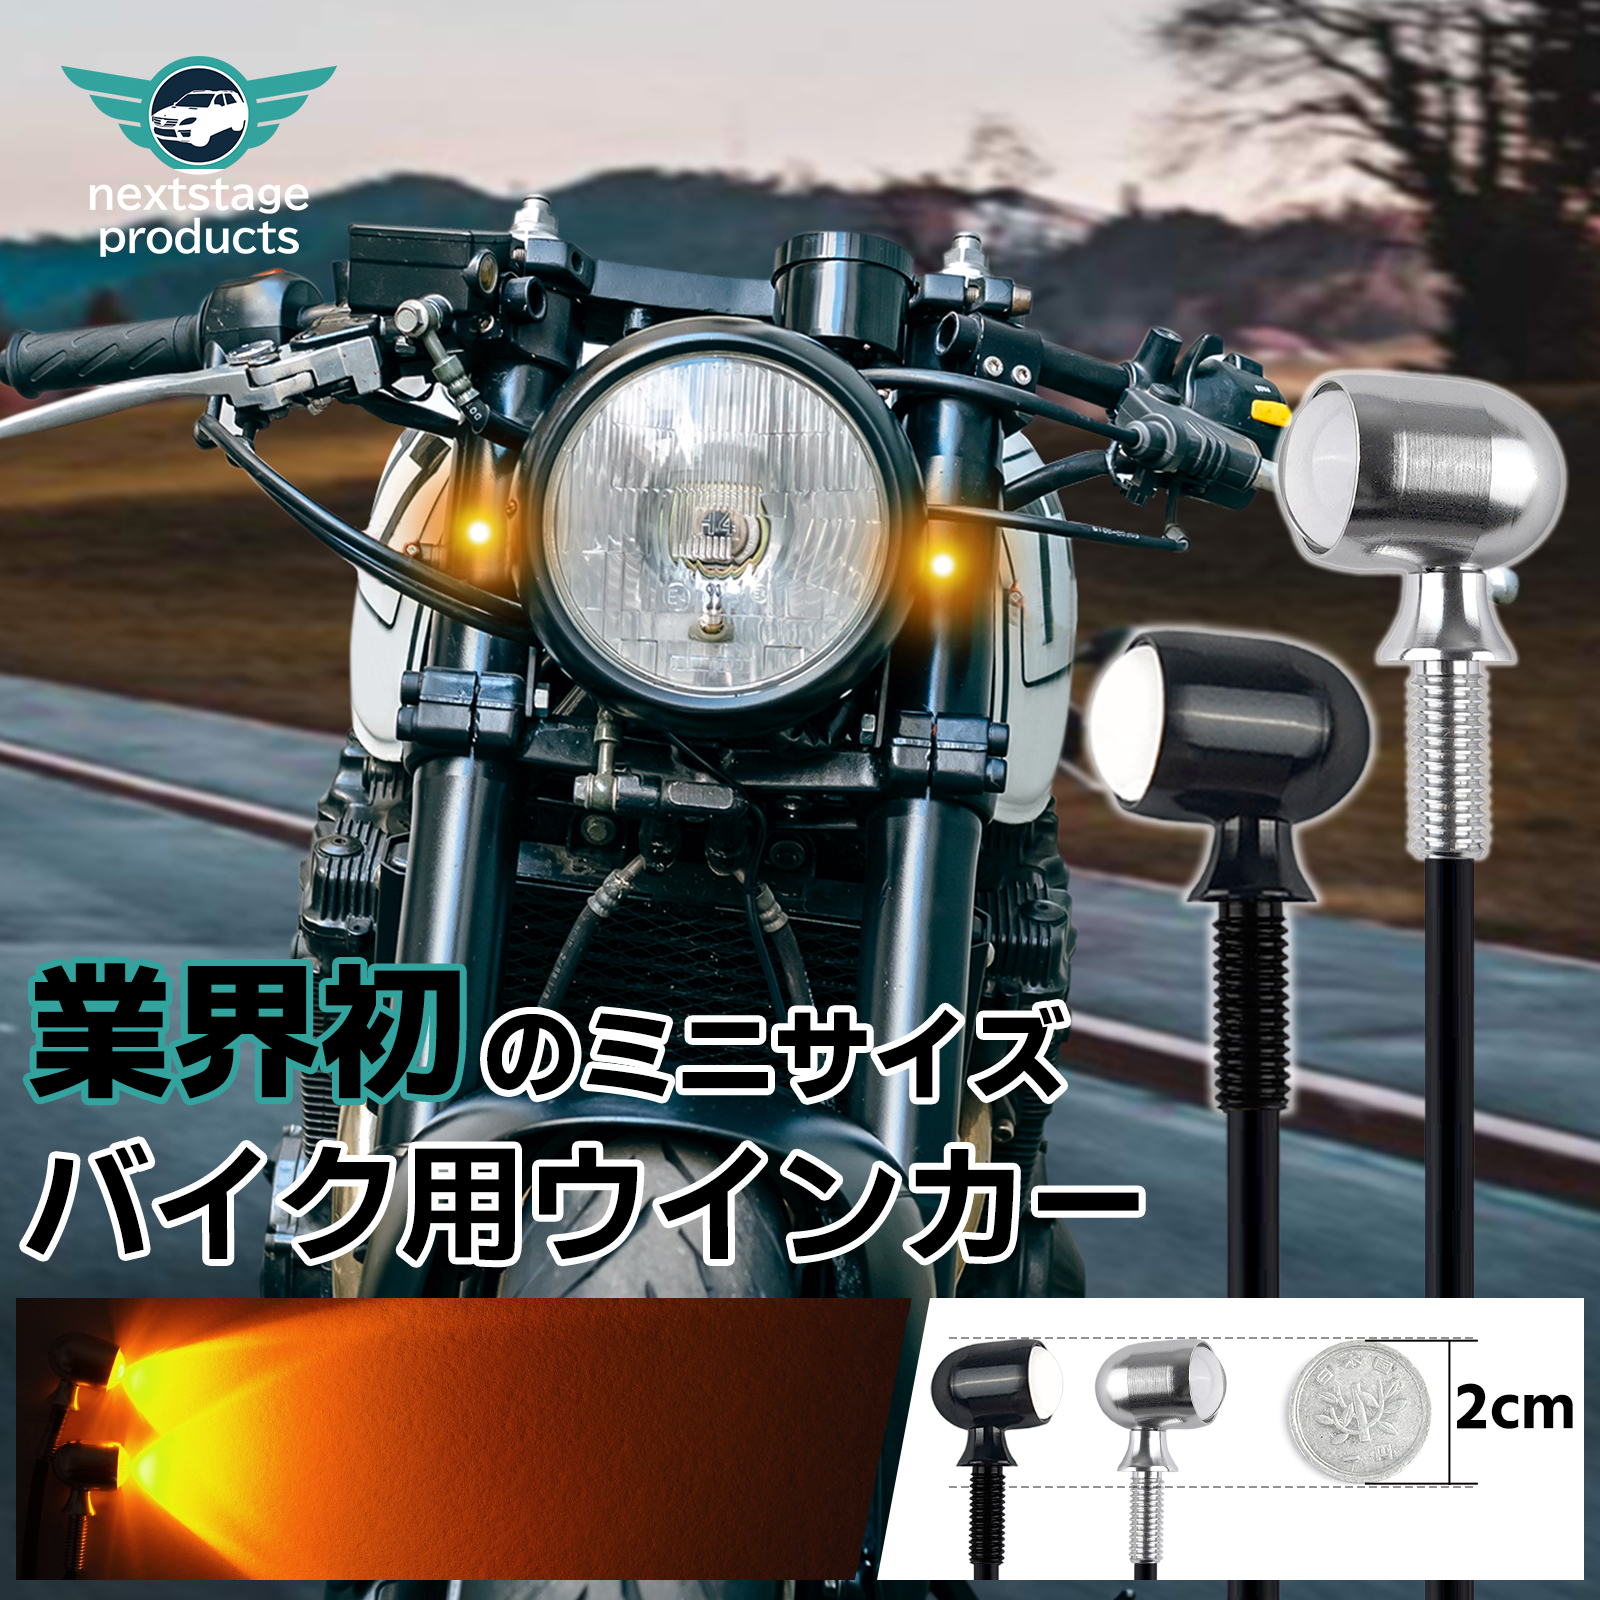 【送料無料】 バイク アメリカン ハーレー風 LED ウインカー ブレーキ 4つ